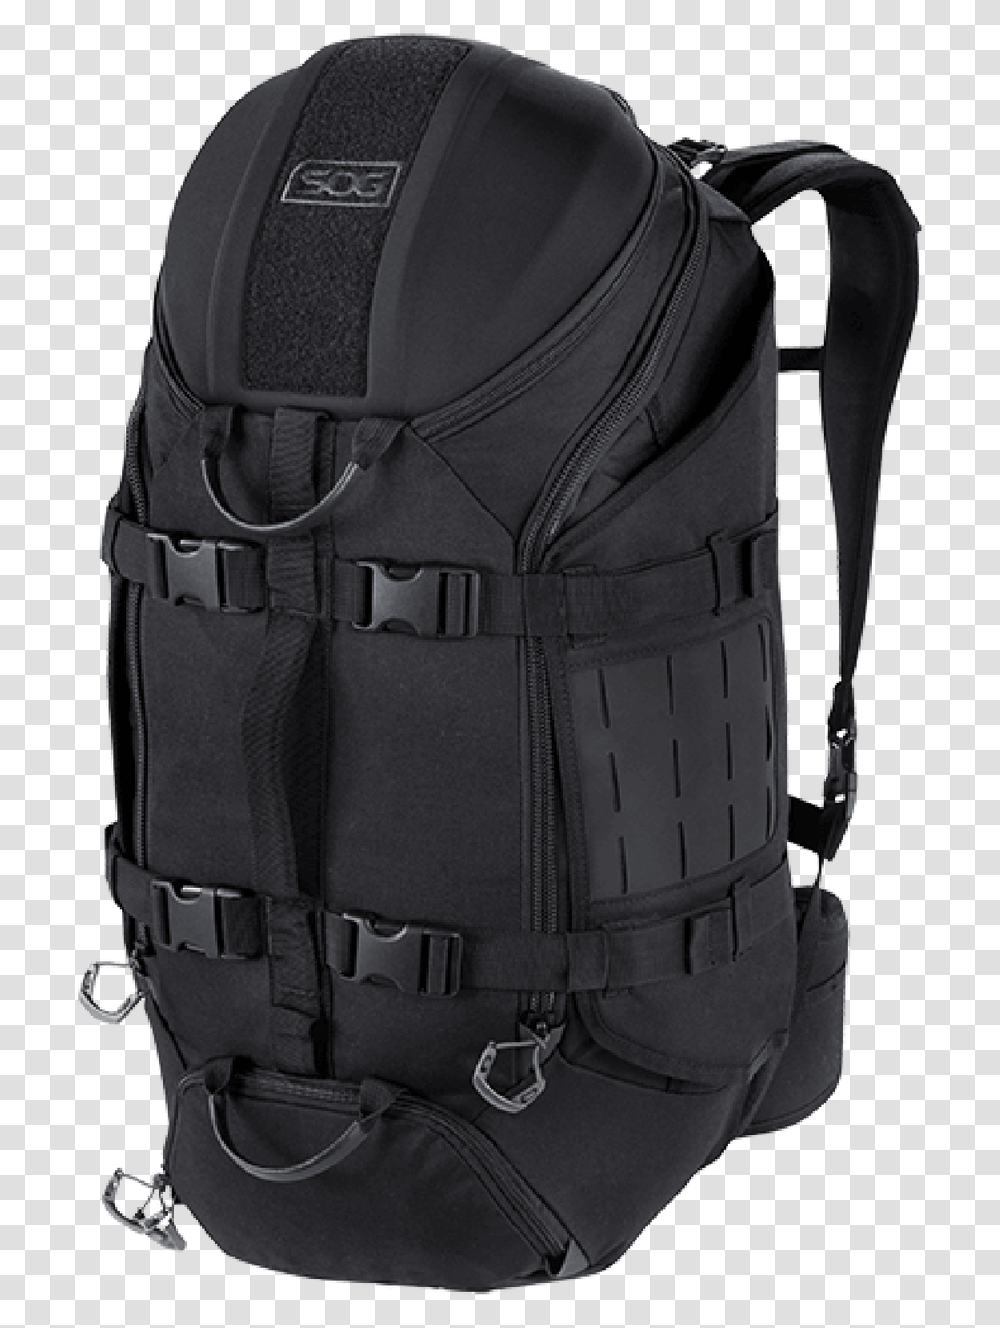 Sog Prophet 33 Backpack 33l Duffle Bag Padded Shoulder Backpack, Apparel, Vest, Lifejacket Transparent Png